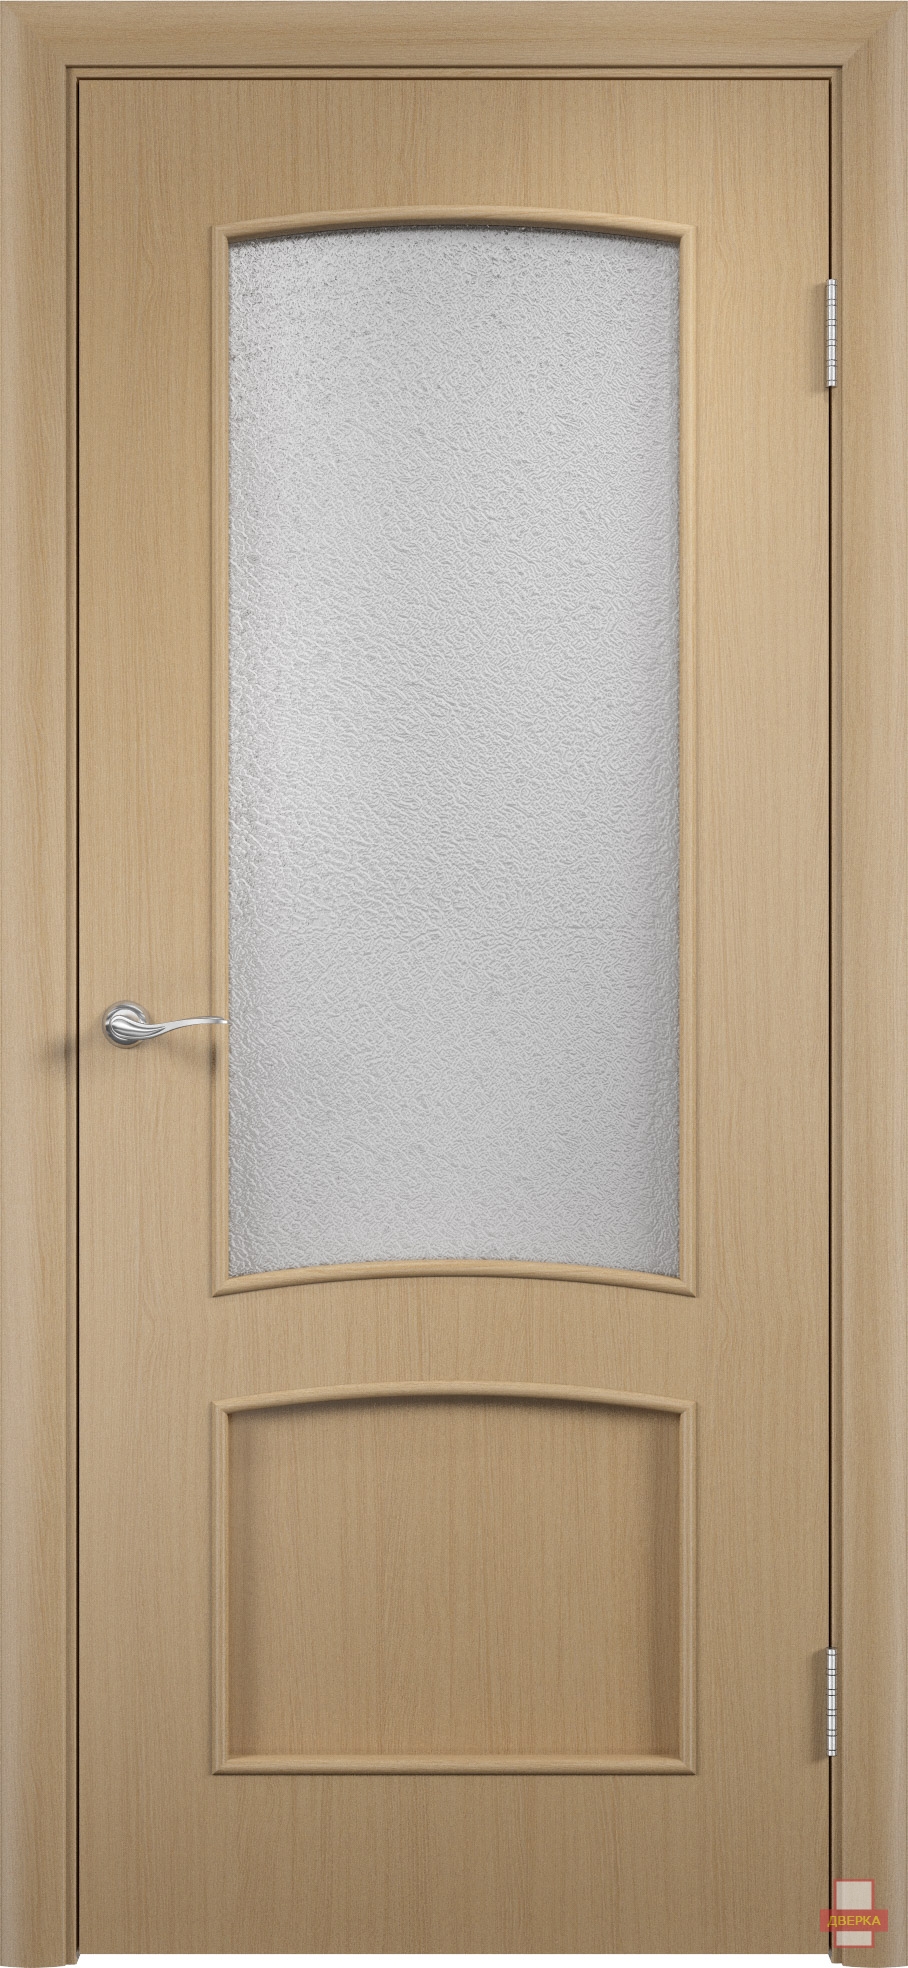 Двери орех стекло. Межкомнатная дверь со стеклом Verda с-2 итальянский орех 700x2000 мм. Ламинированные двери межкомнатные Верда. Оникс Прага межкомнатная дверь. Наличник Верда итальянский орех.